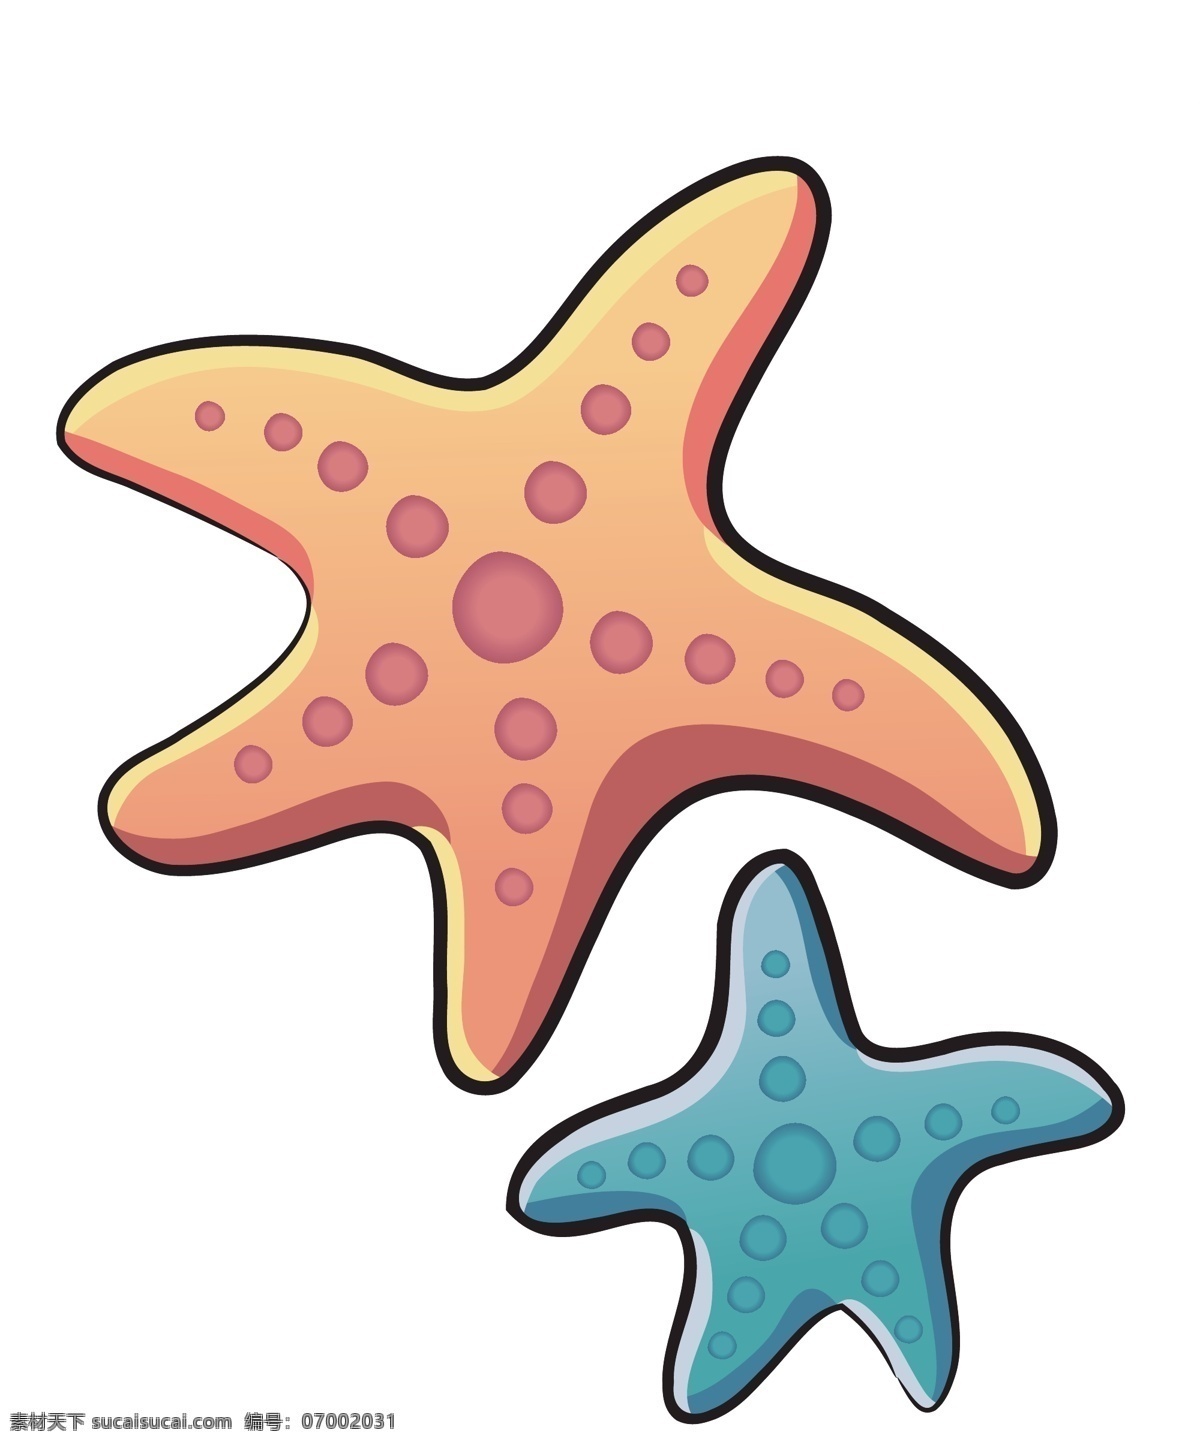 卡通 海底 星星 海洋生物 模板下载 海洋 鱼 矢量生物 海鲜 矢量